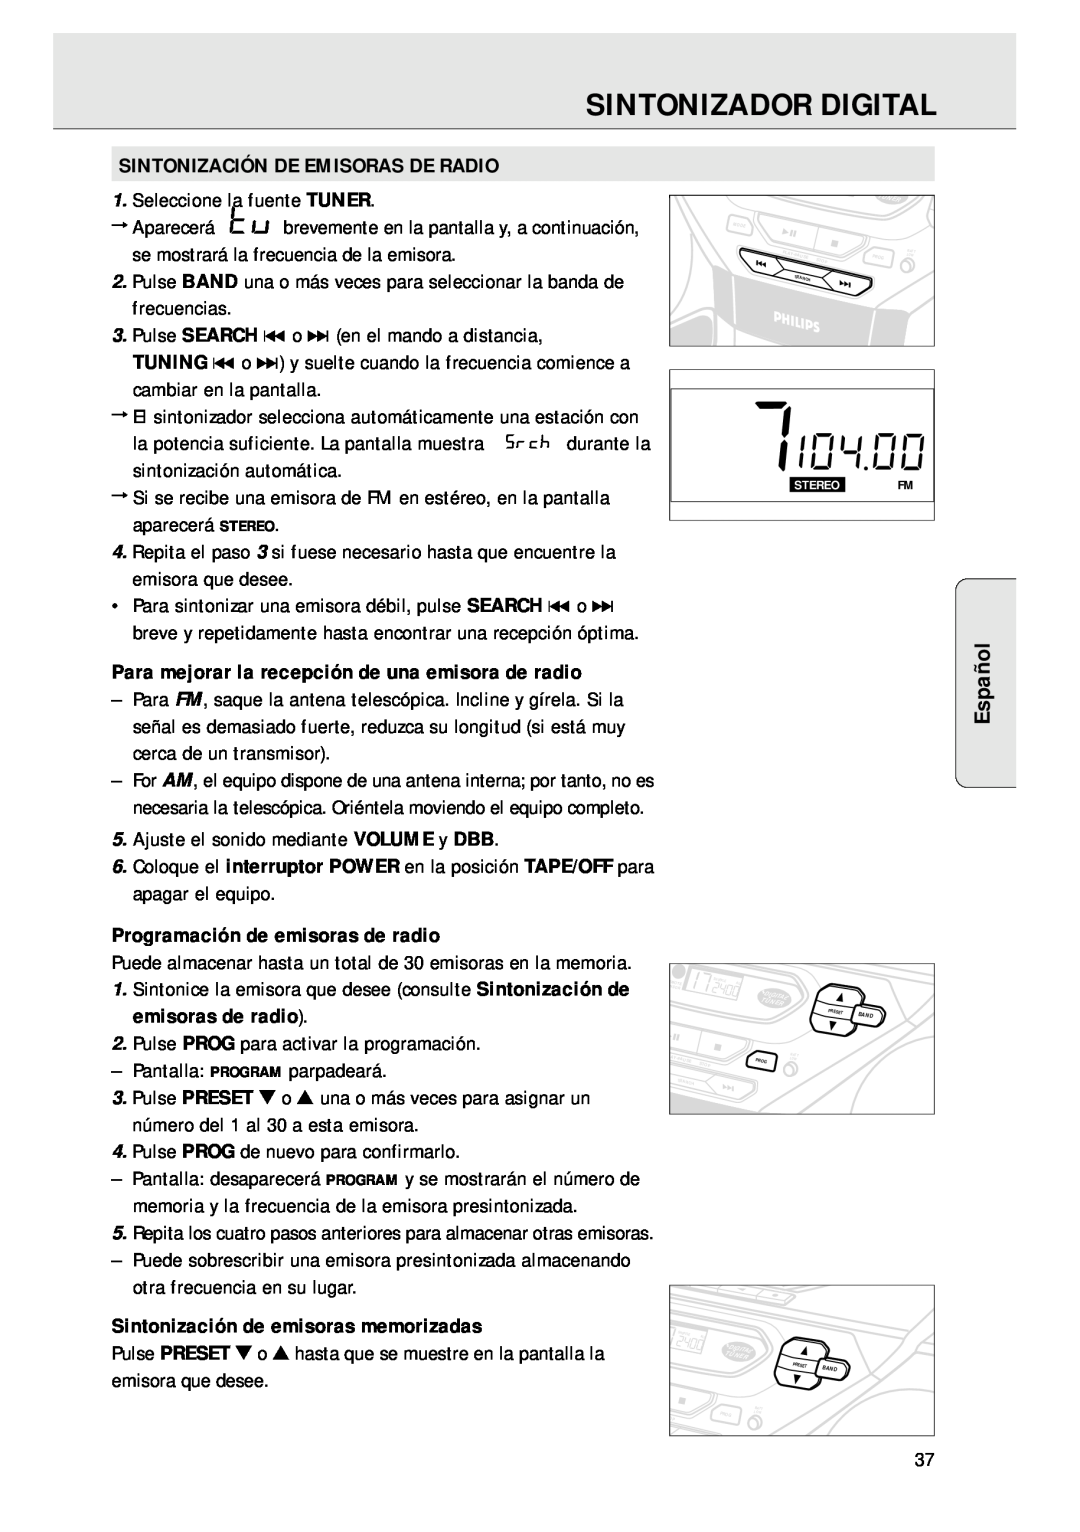 Magnavox AZ 1045 Sintonizador Digital, Español, Sintonización De Emisoras De Radio, Programación de emisoras de radio 